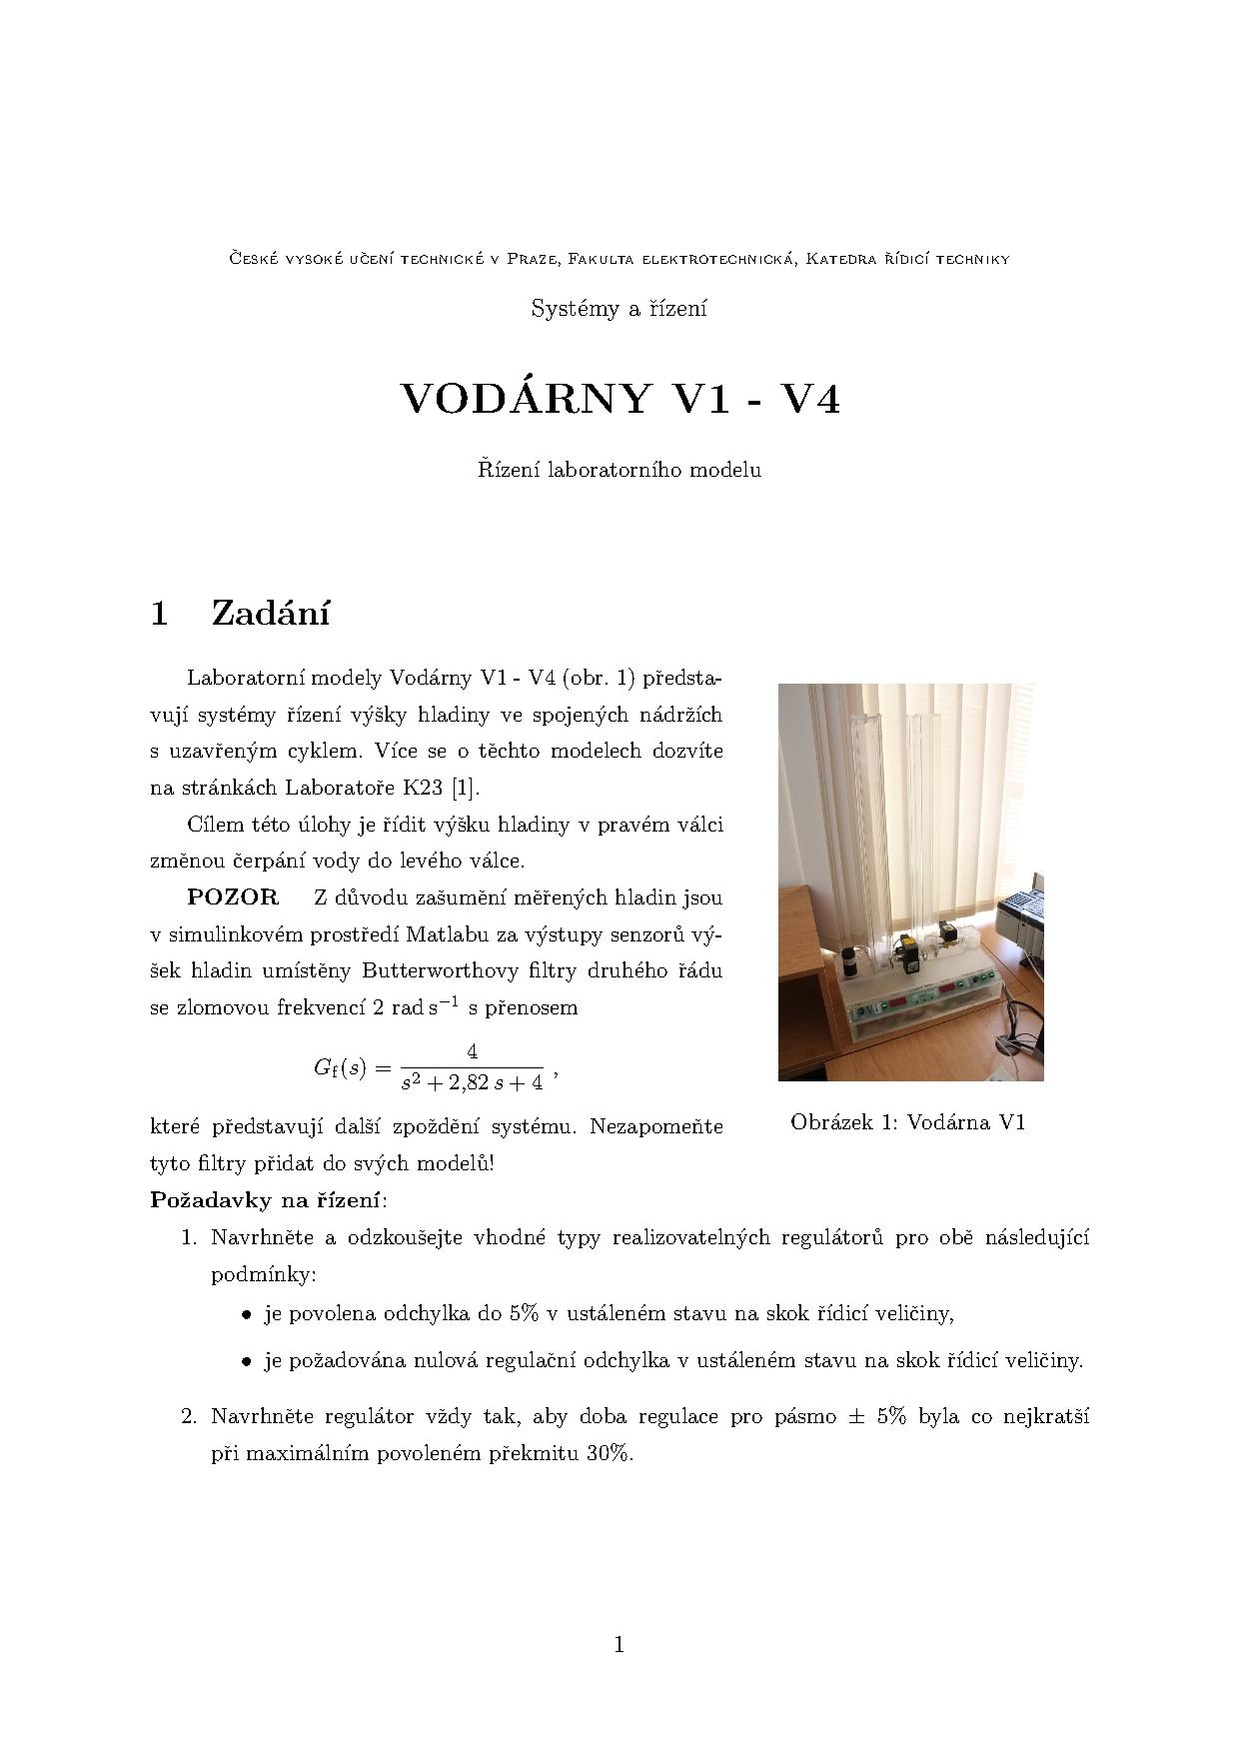 V1-V4-reg.pdf